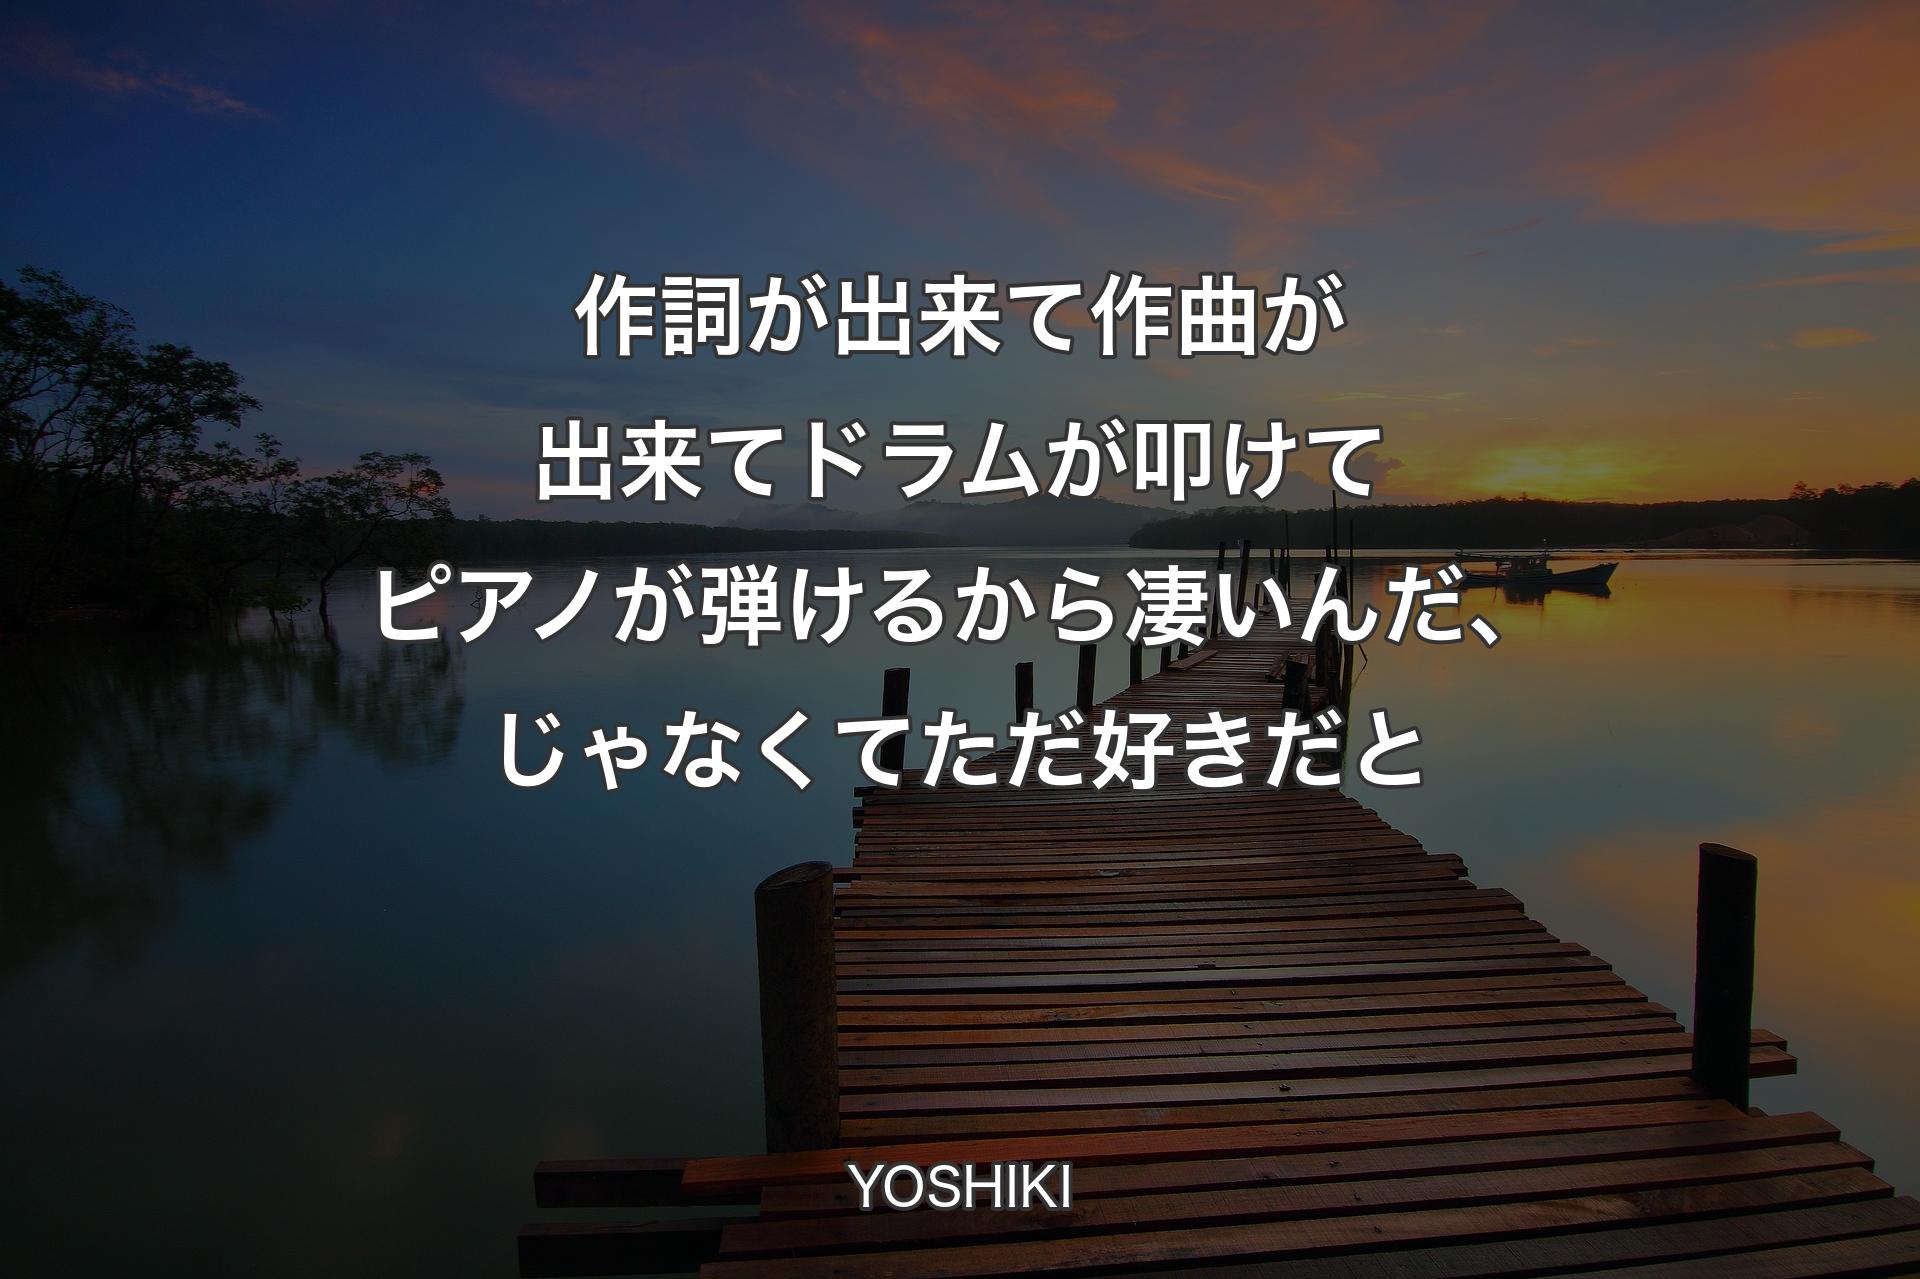 【背景3】作詞が出来て作曲が出来てドラムが叩けてピアノが弾�けるから凄いんだ、じゃなくてただ好きだと - YOSHIKI